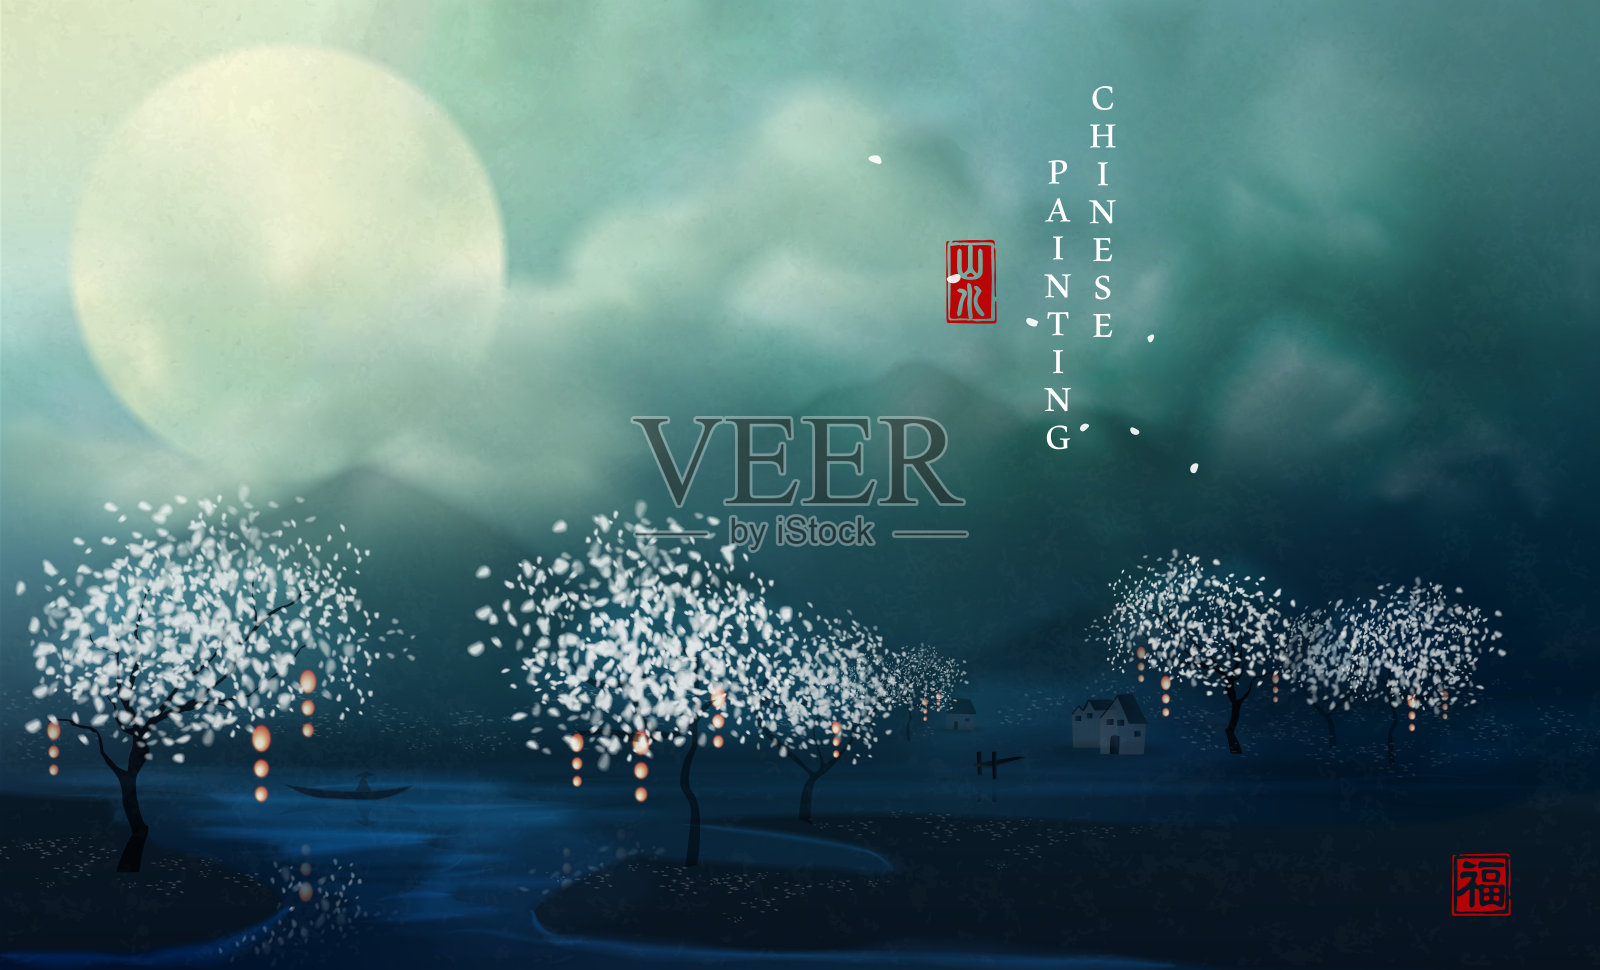 中国水墨画艺术背景优雅的山水风景田园美景与满月山在夜晚被云包围。中文翻译:风景与祝福。插画图片素材